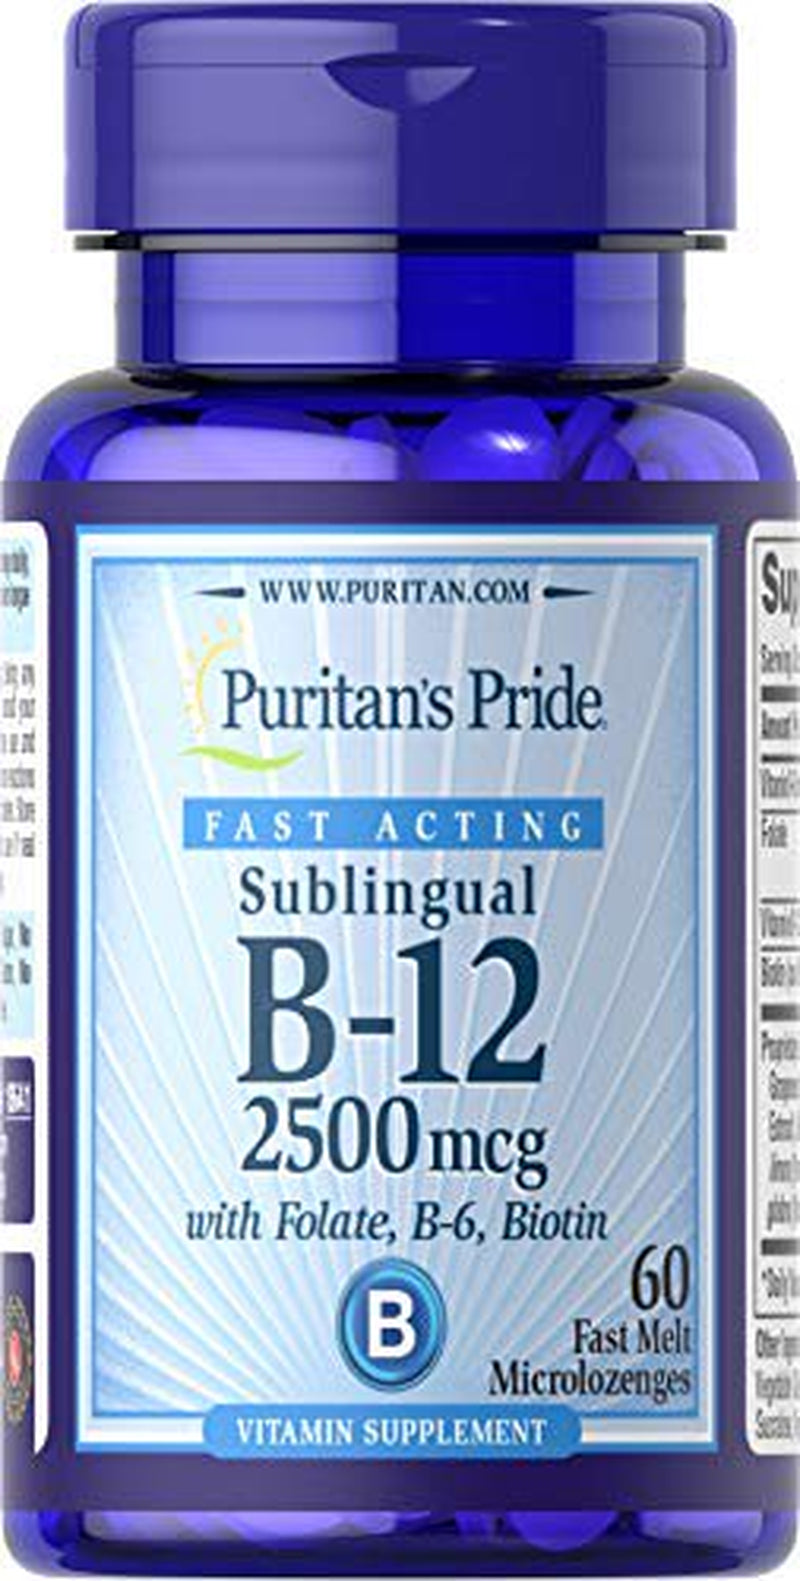 Puritan'S Pride Vitamin B-12 2500 Mcg Sublingual with Folic Acid, Vitamin B-6 and Biotin-60 Microlozenges